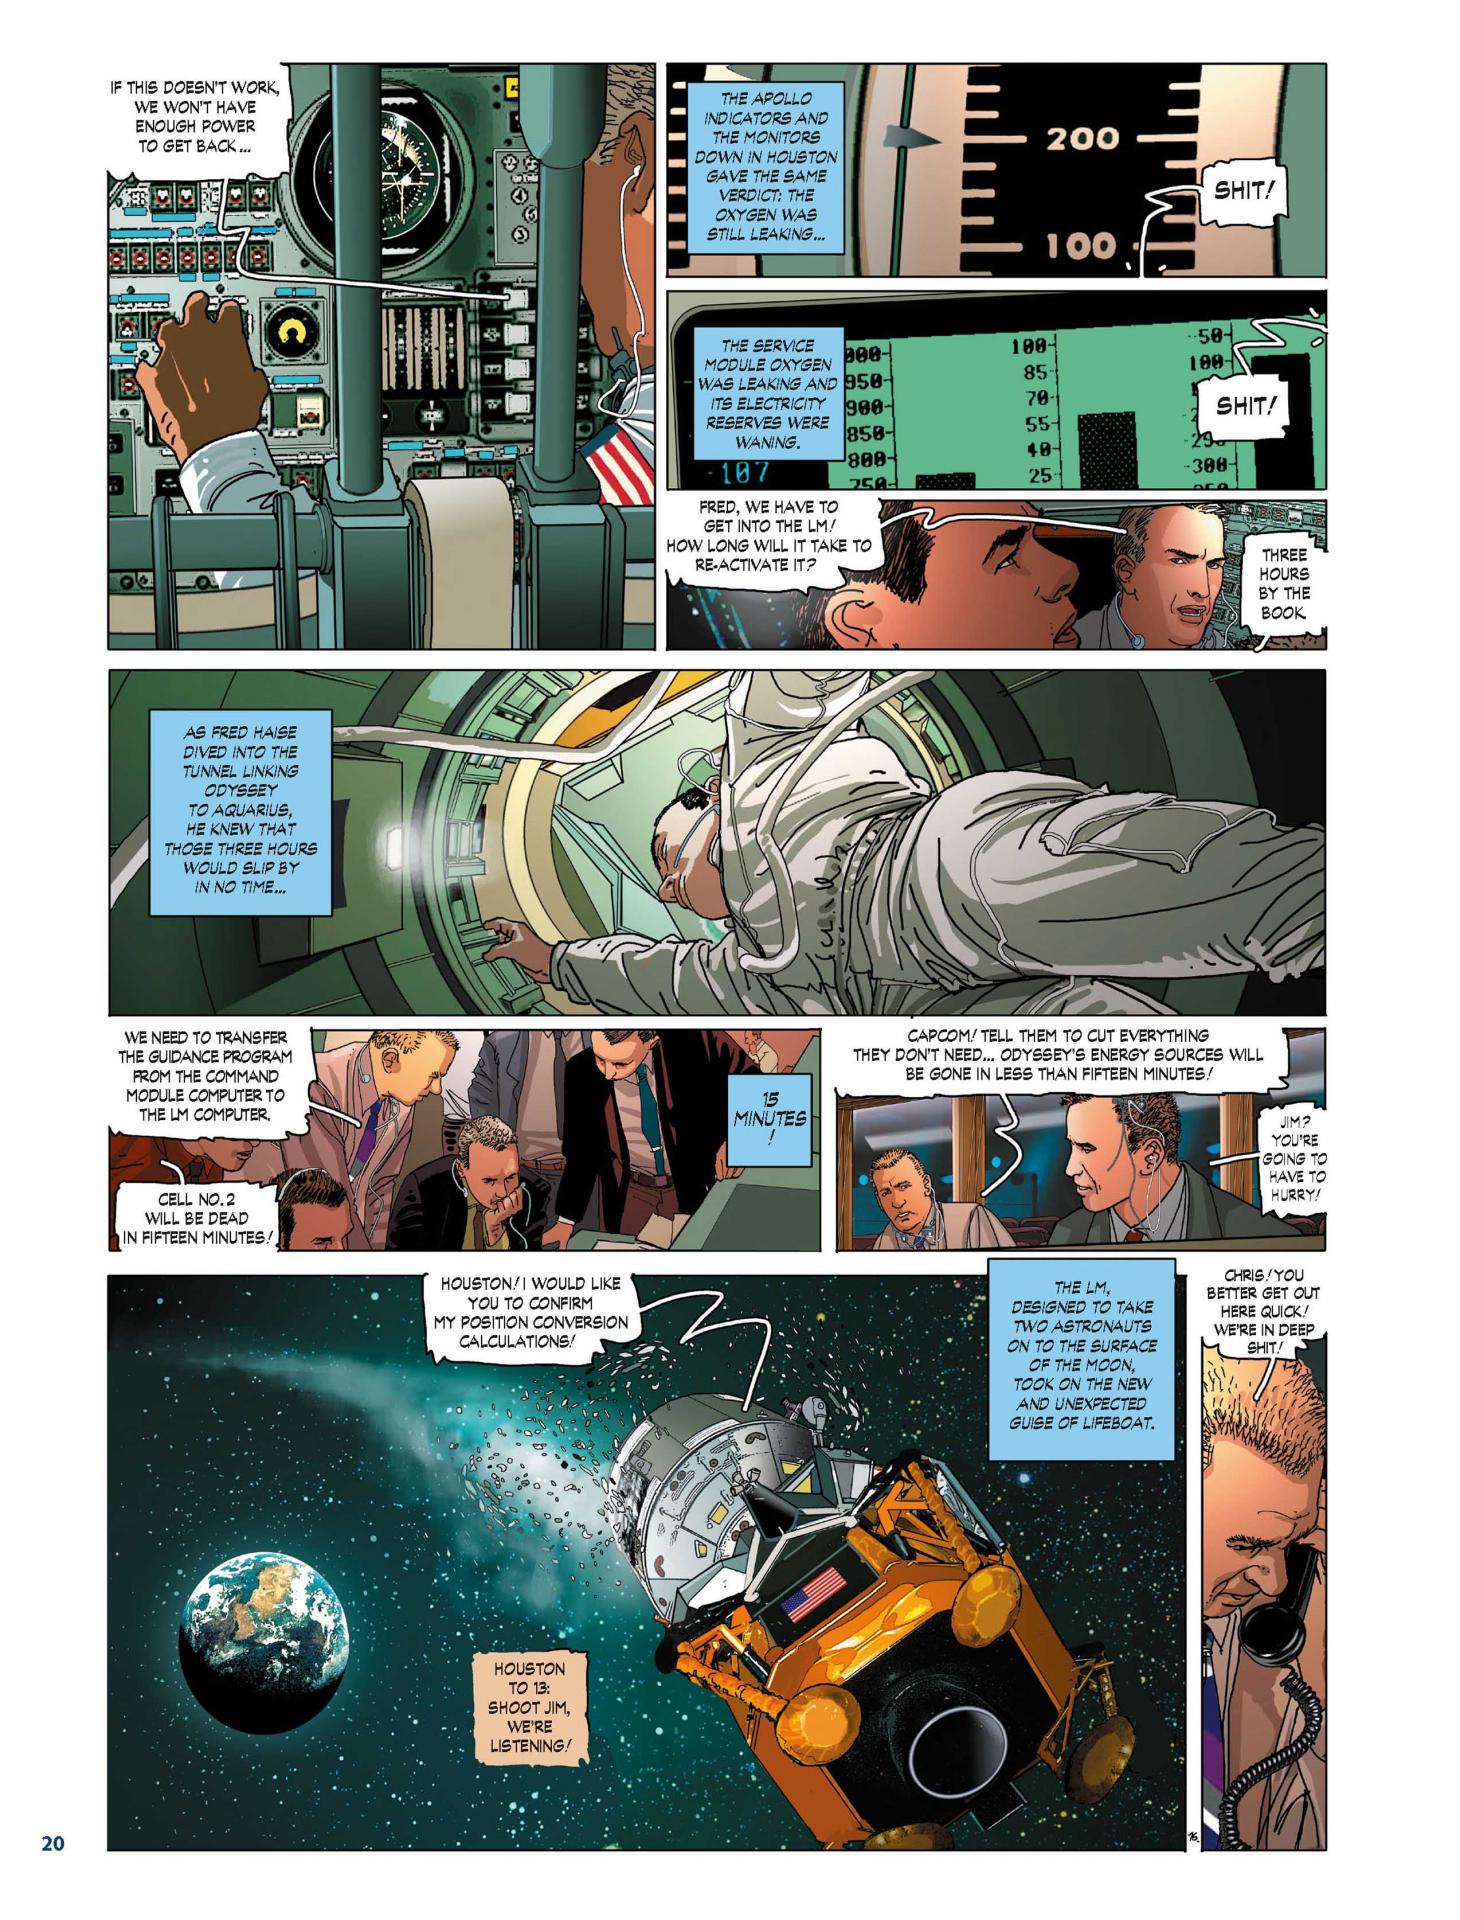 A13 UK - Page 20 - Comic strip